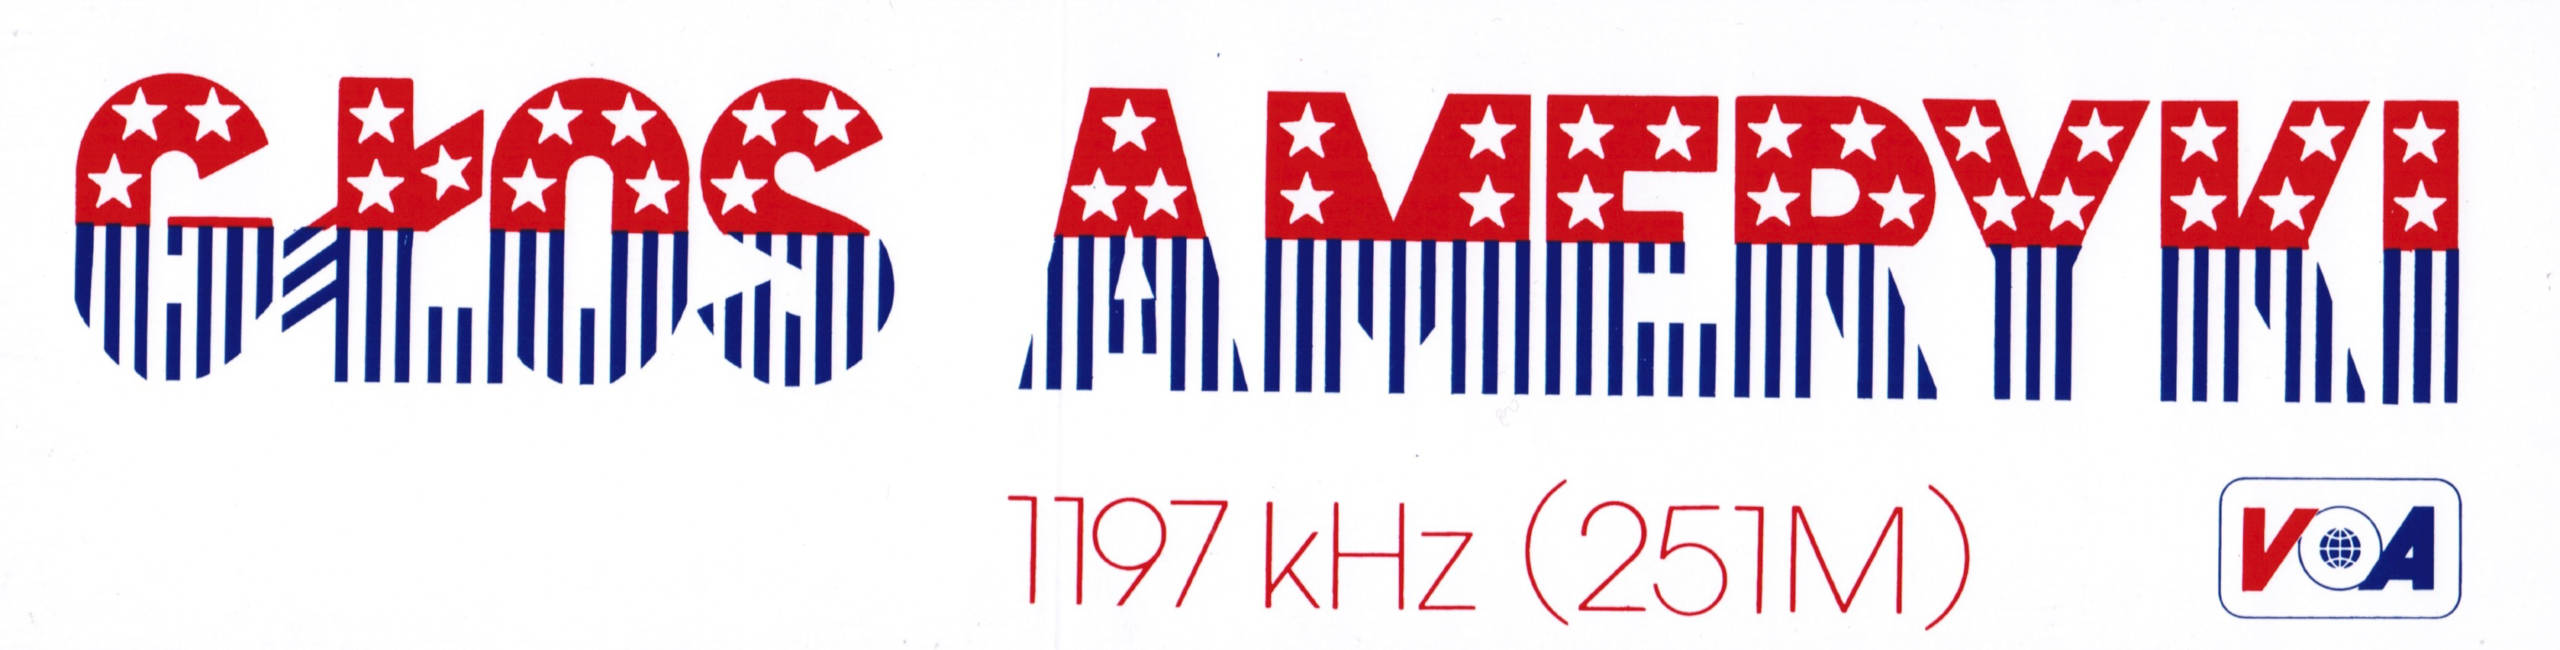 Voice of America Polish Service Olympic Studio 1984 – Studio olimpijskie Głosu Ameryki Los Angeles-Waszyngton – Archival Recording – Archiwalne nagranie